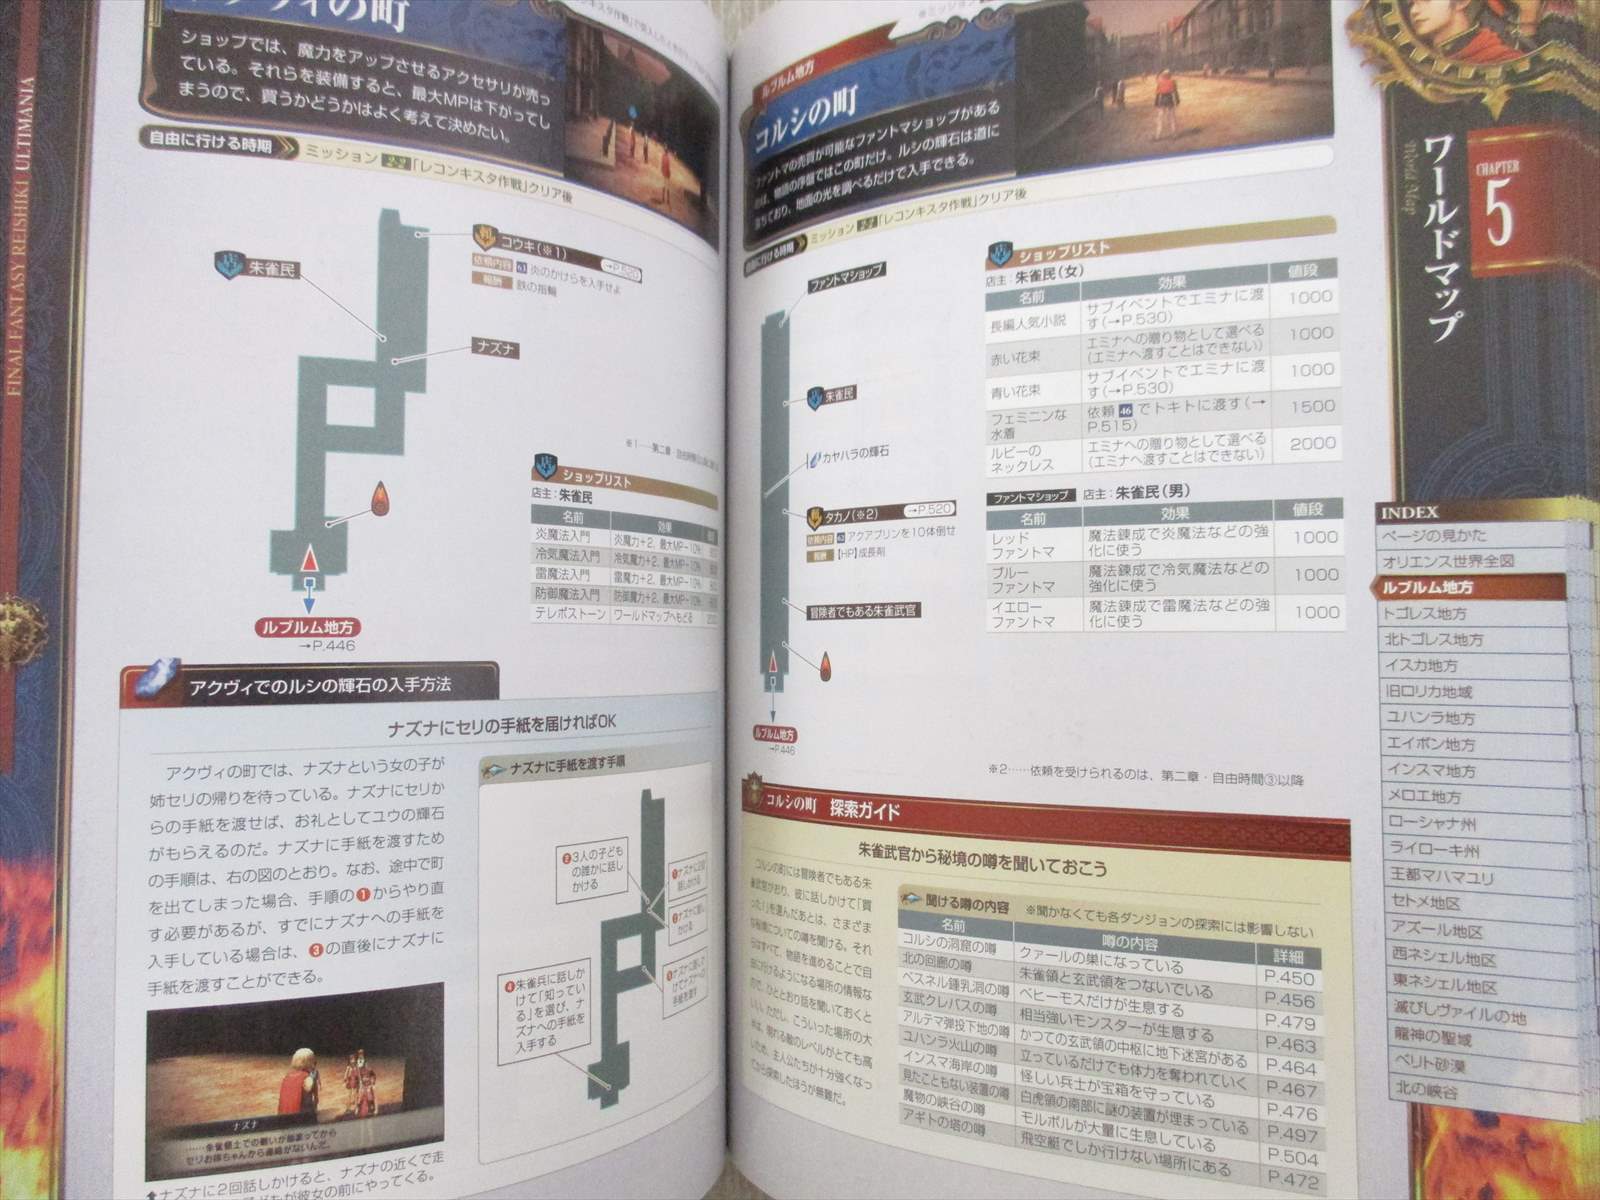 Final Fantasy Reishiki Ultimania Guide Psp Book 11 Se22 Ebay